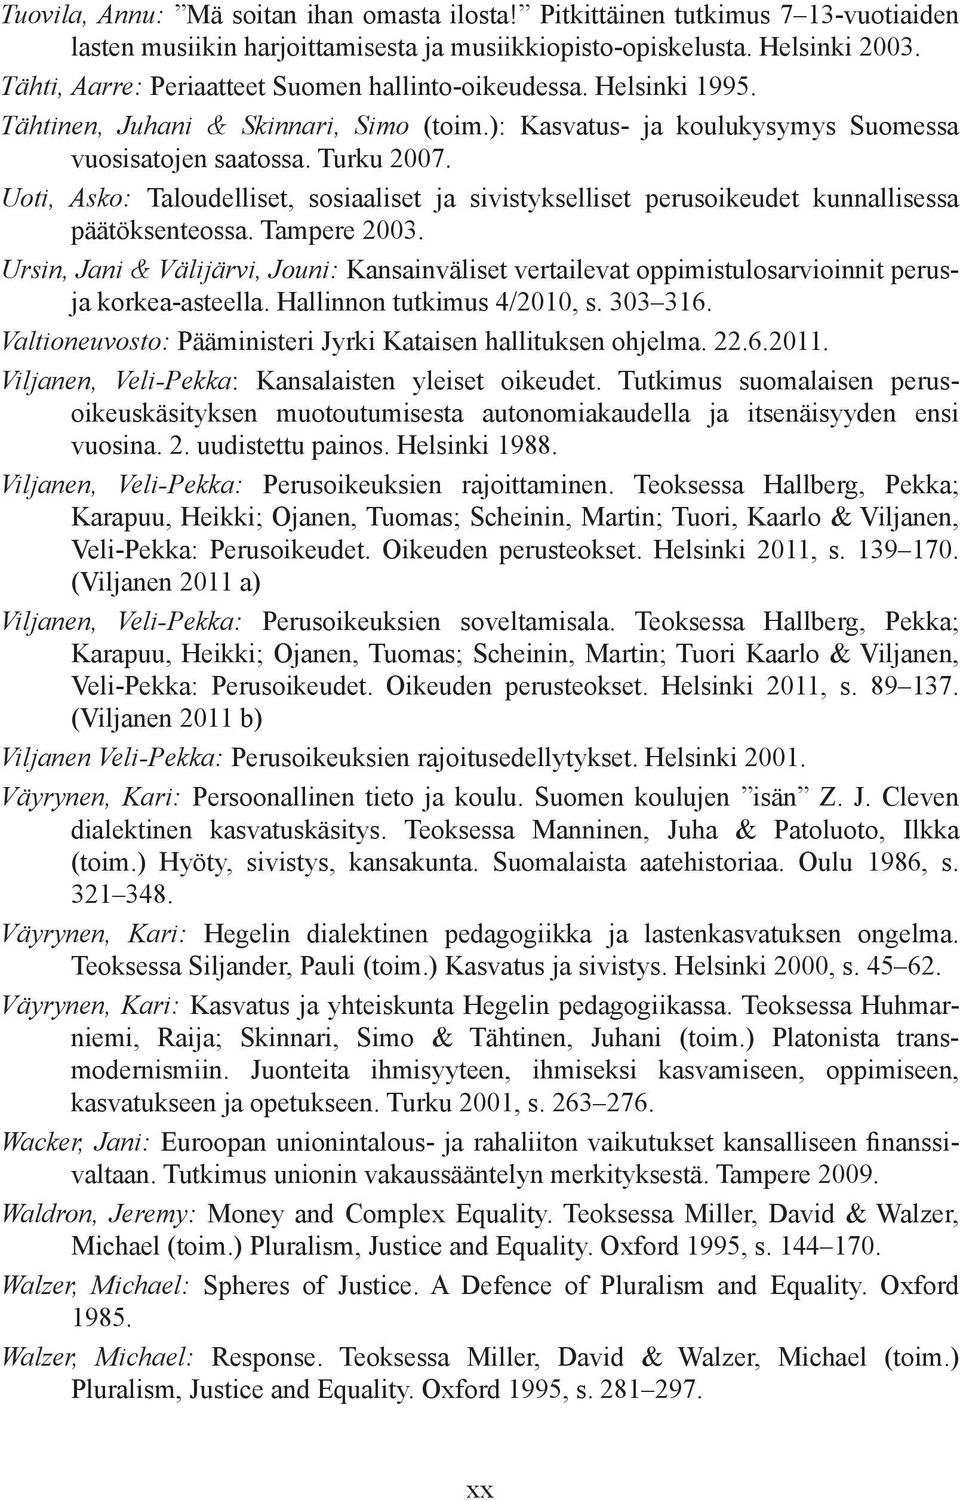 Uoti, Asko: Taloudelliset, sosiaaliset ja sivistykselliset perusoikeudet kunnallisessa päätöksenteossa. Tampere 2003.